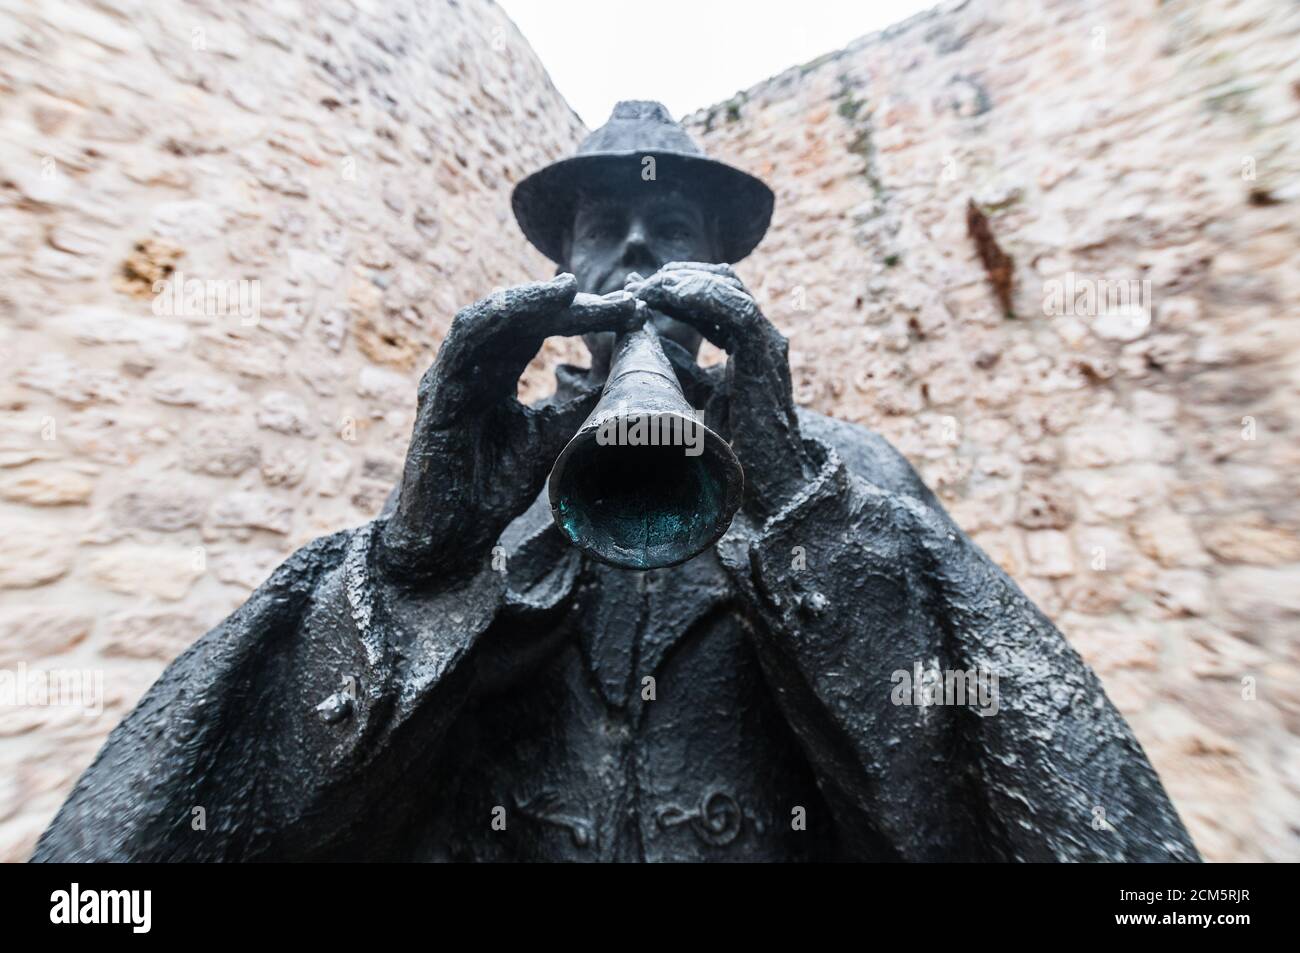 Statua in bronzo di un tradizionale musicista folk che suona un tipico strumento eolico chiamato 'Dulzaina' di fronte a un muro lapidato a Burgos, Spagna. Foto Stock